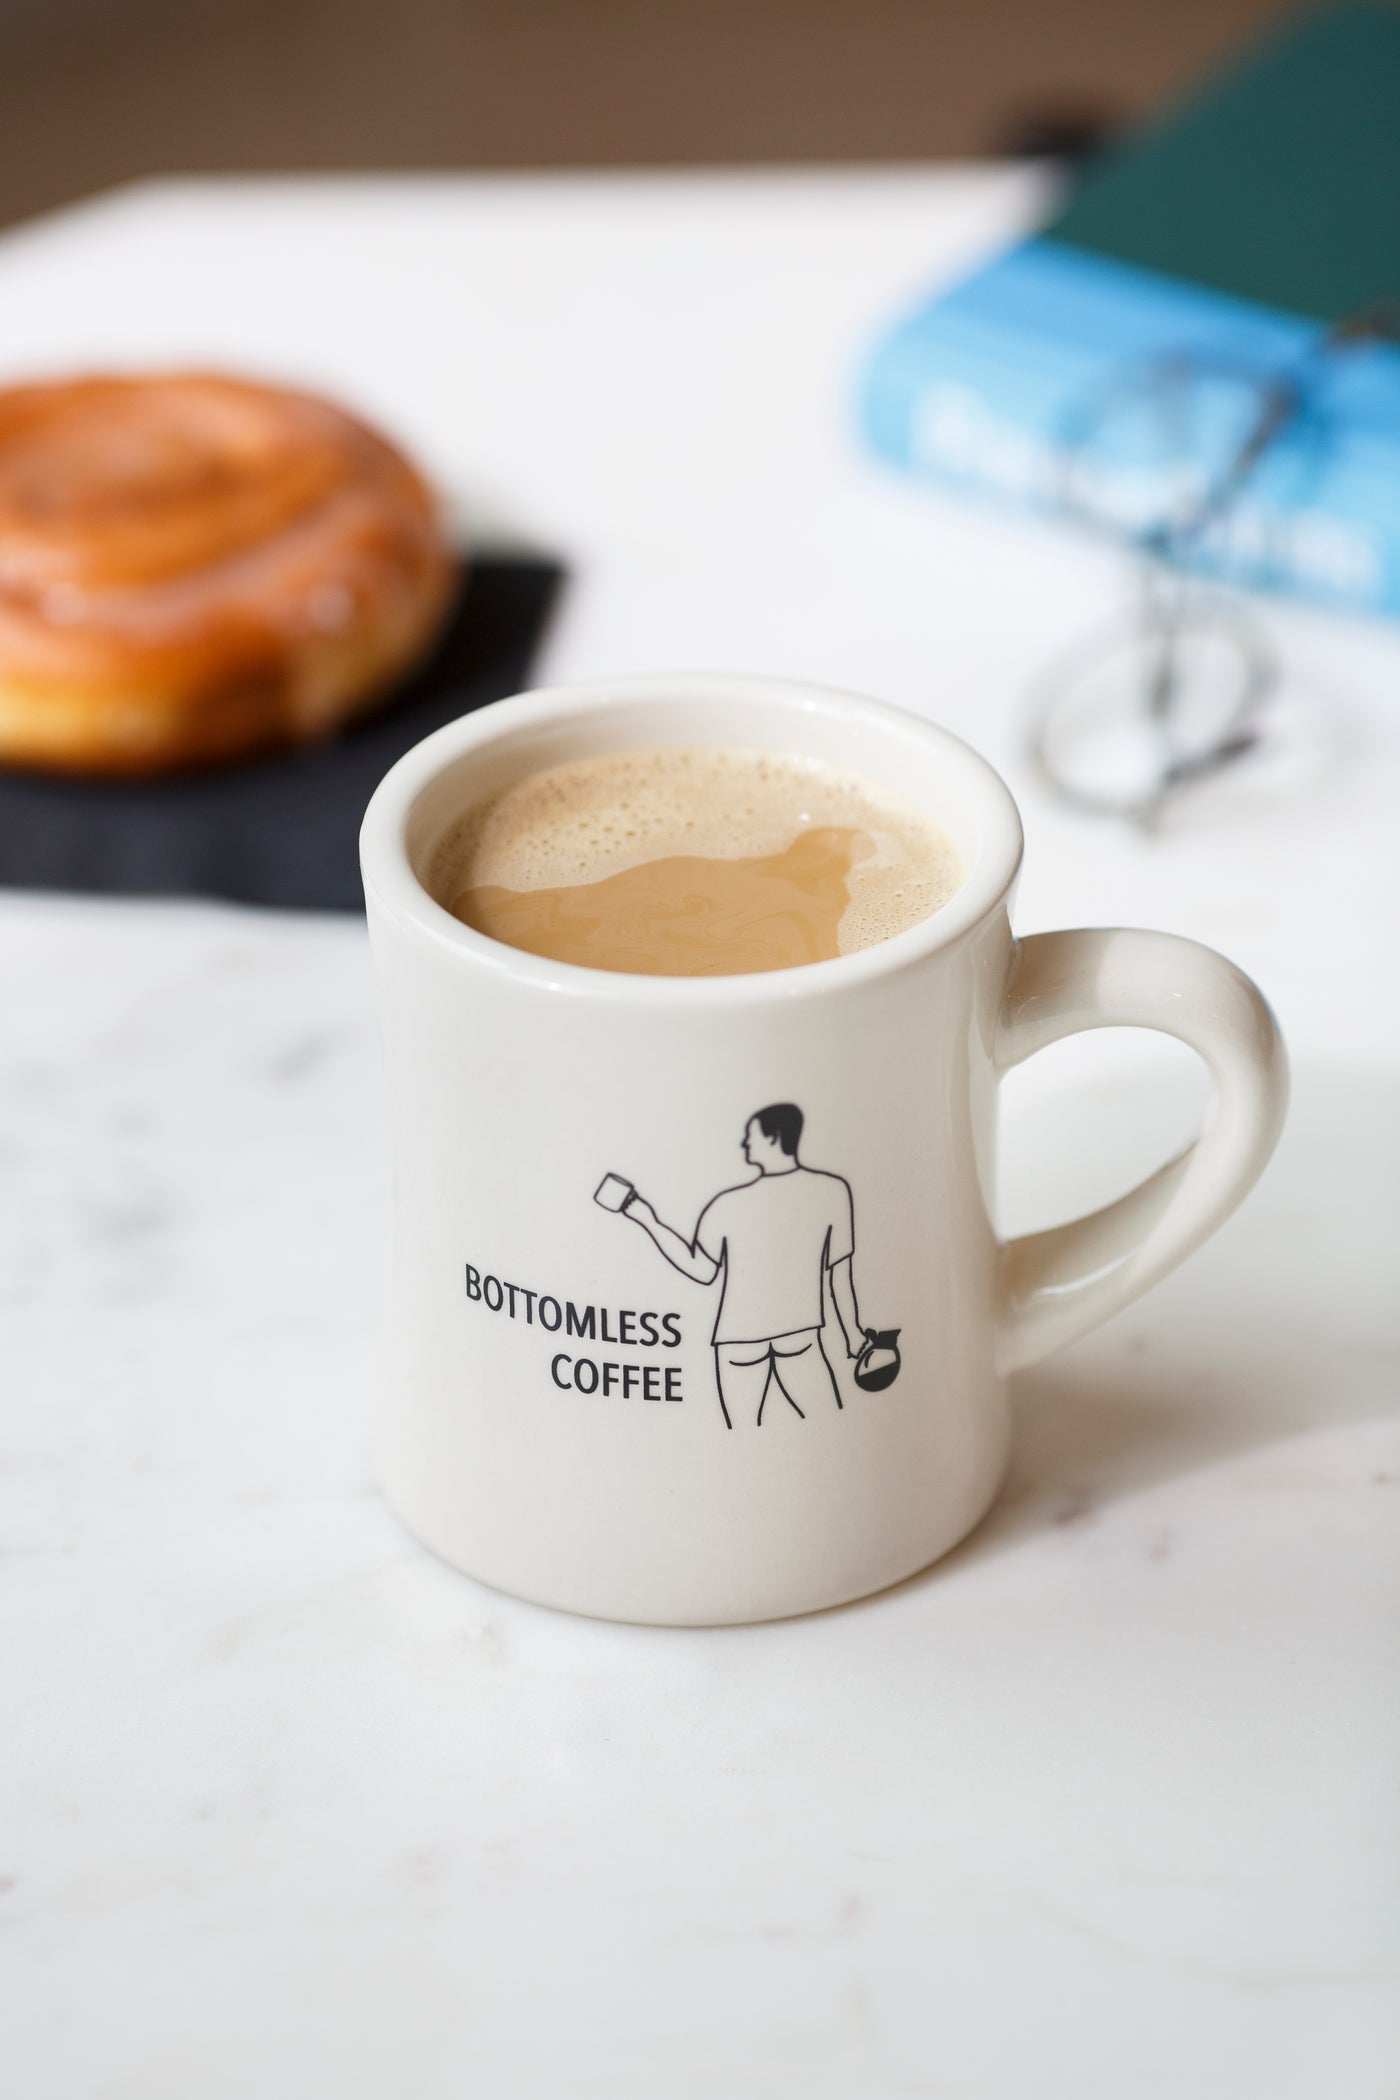 Bottomless Coffee Mug